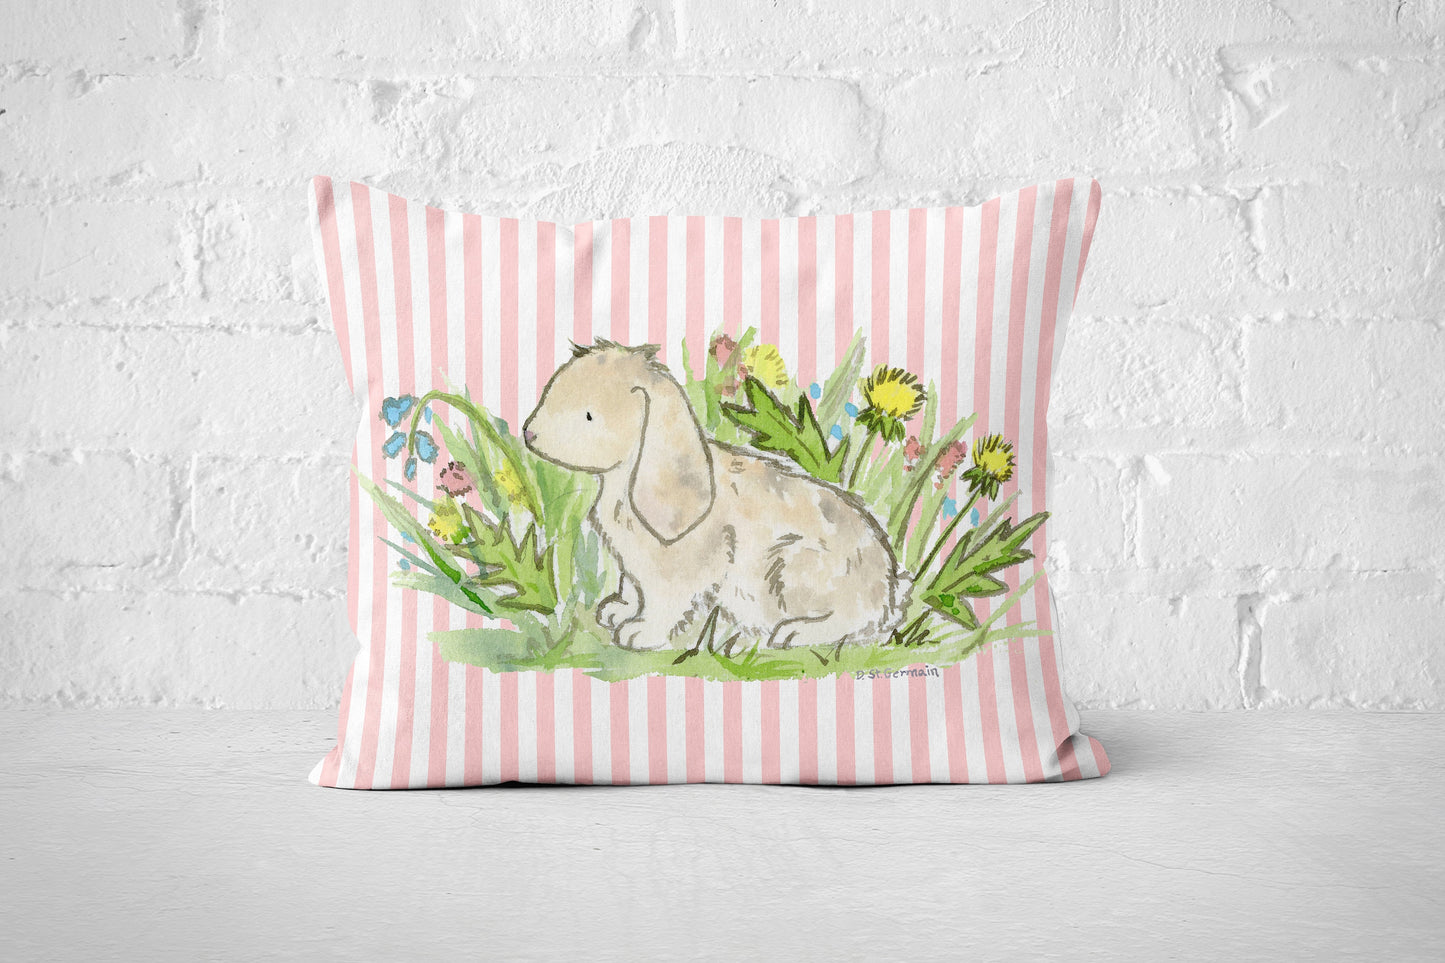 Easter Throw Pillow Cover, Cute Bunny Pillow, Easter Decor, Spring Pillow Cover, Lop Bunny Rabbit, Holiday Pillow Cover, Farmhouse Decor